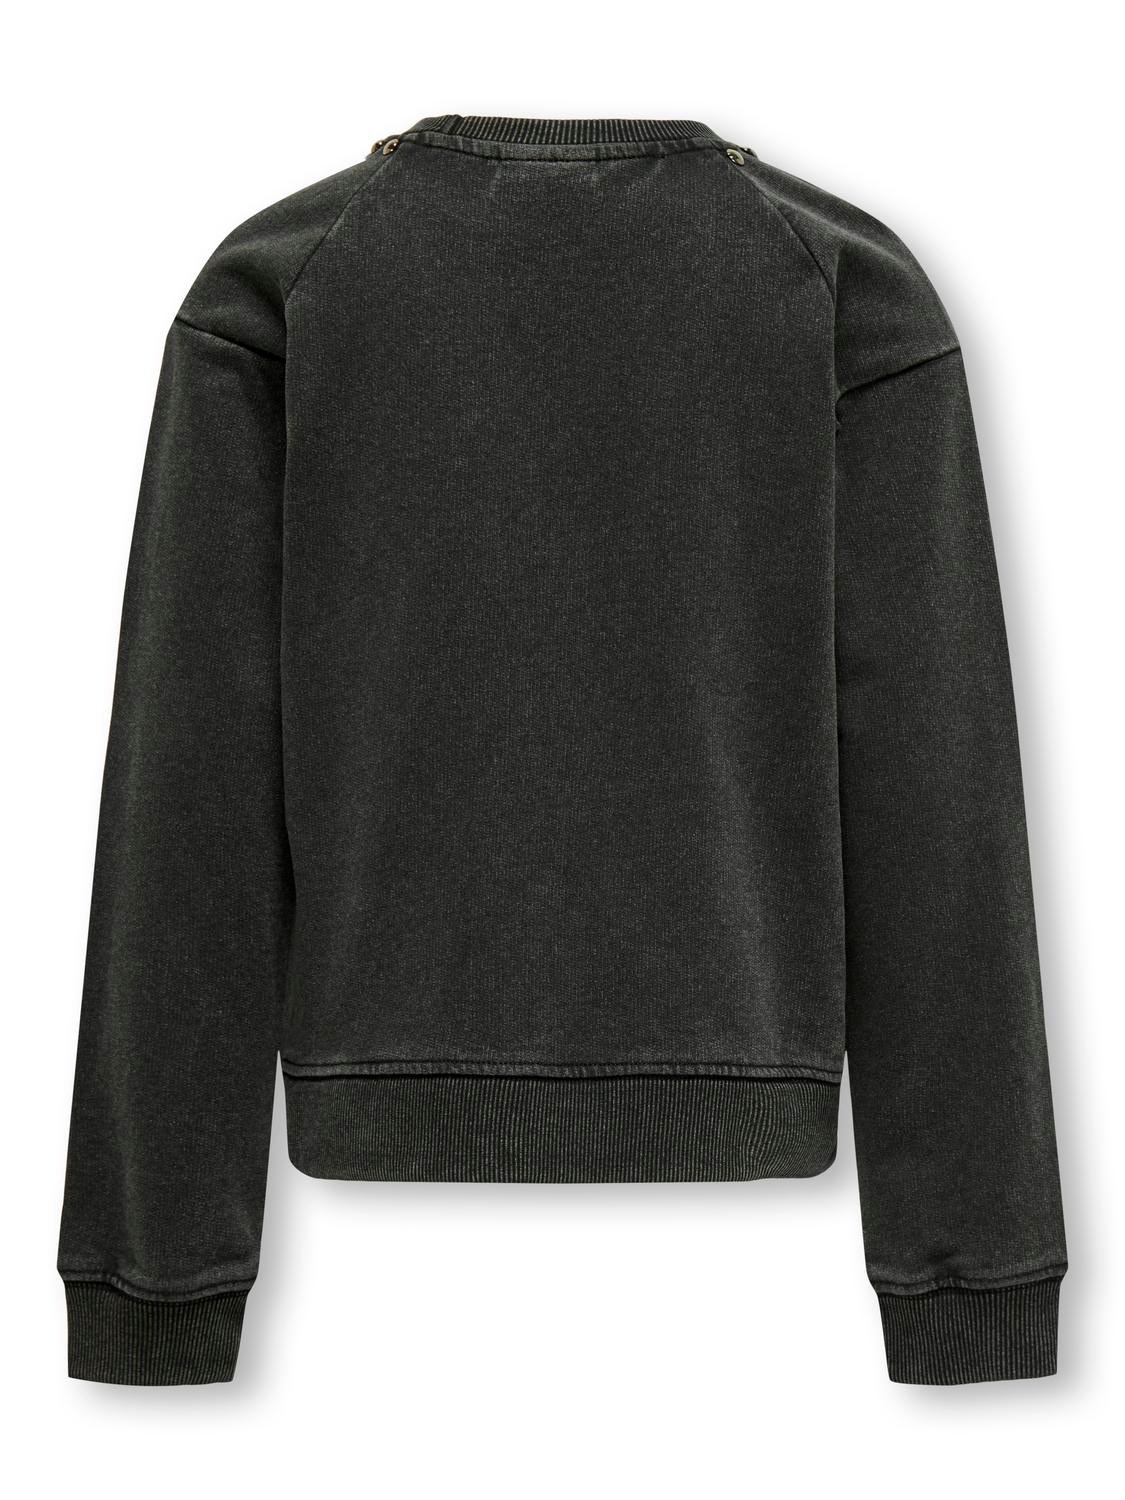 ONLY Normal geschnitten Rundhals Sweatshirt -Black - 15320273